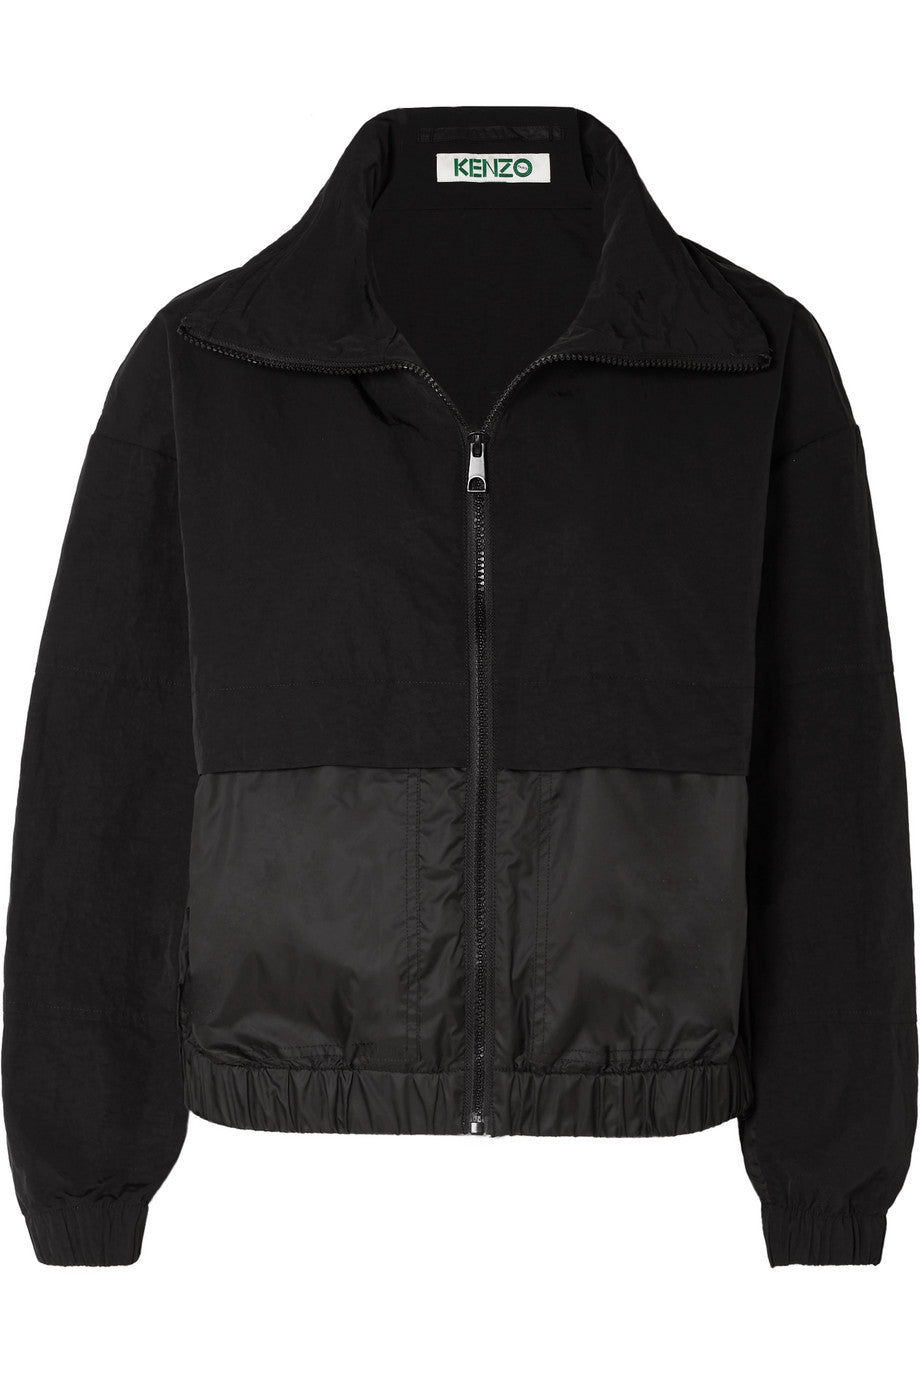 Kenzo - Black hodded printed shell bomber jacket